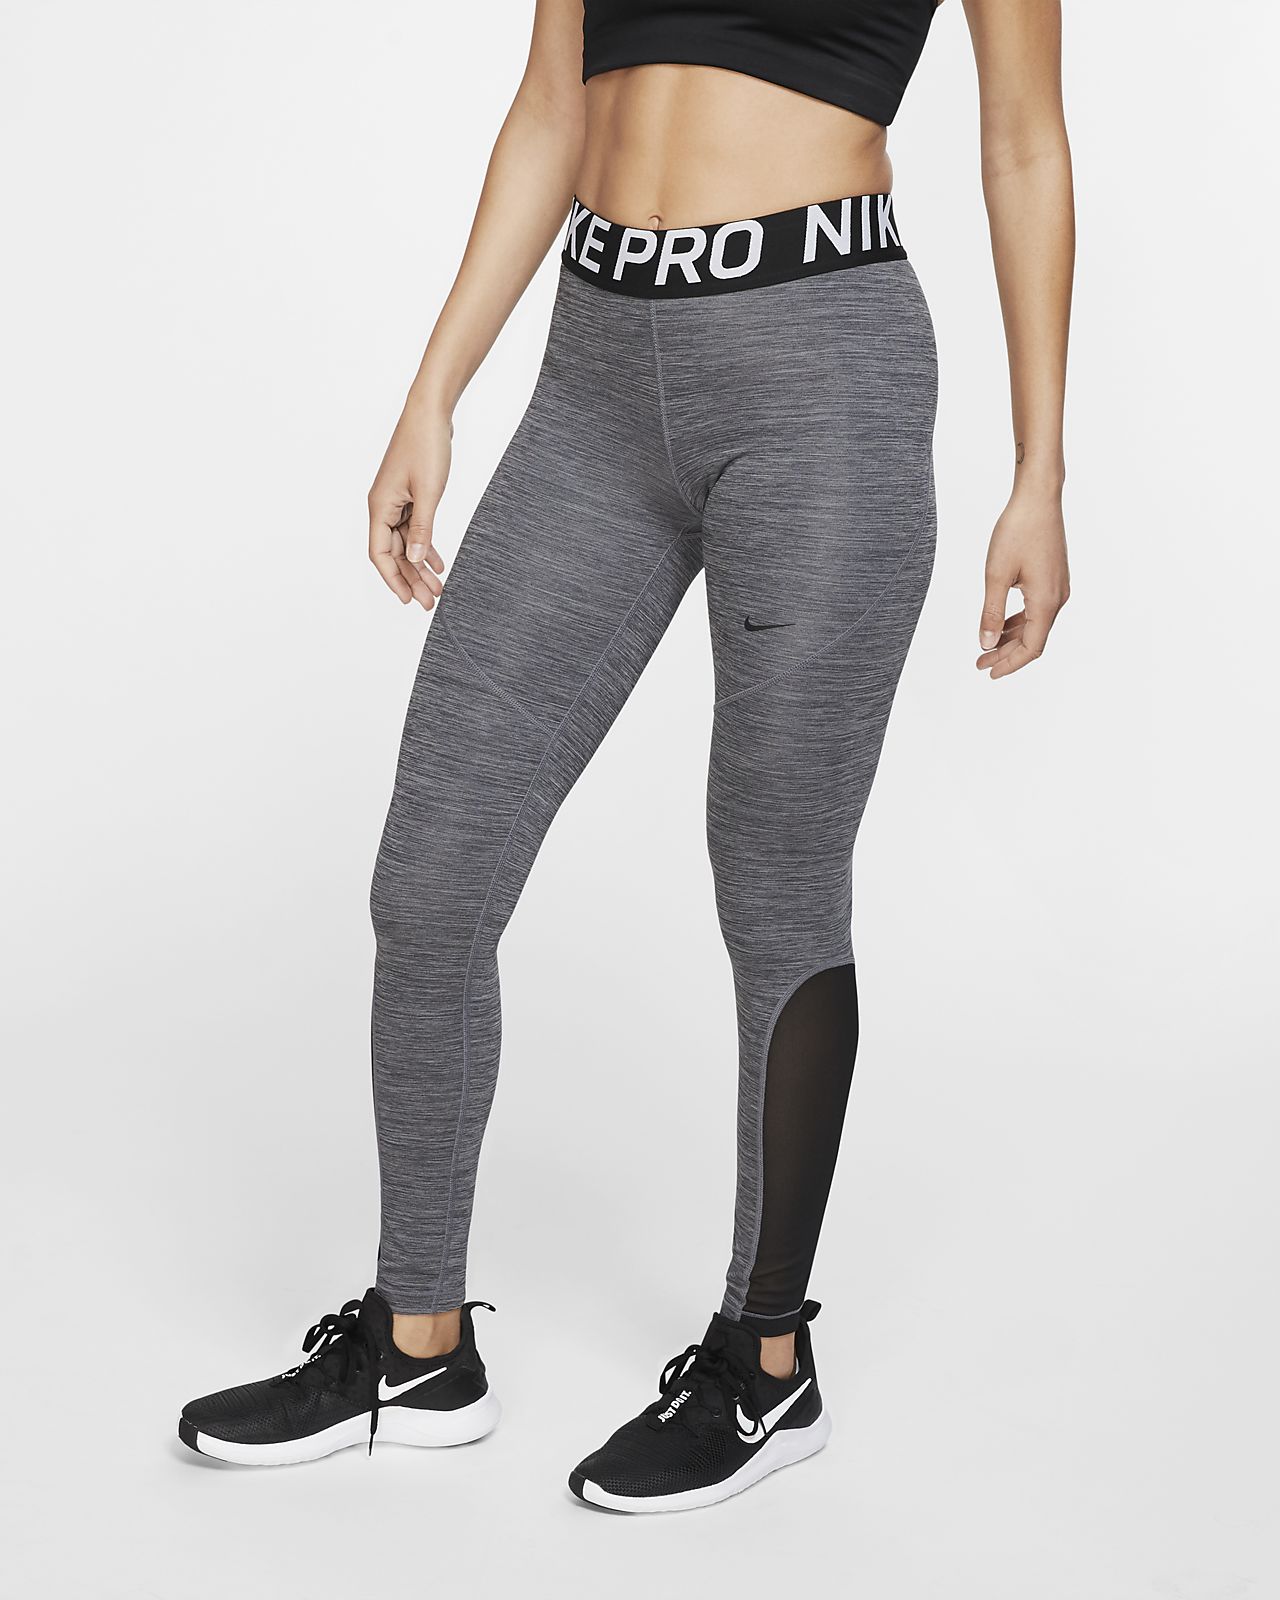 Nike Pro Women's Tights. Nike LU